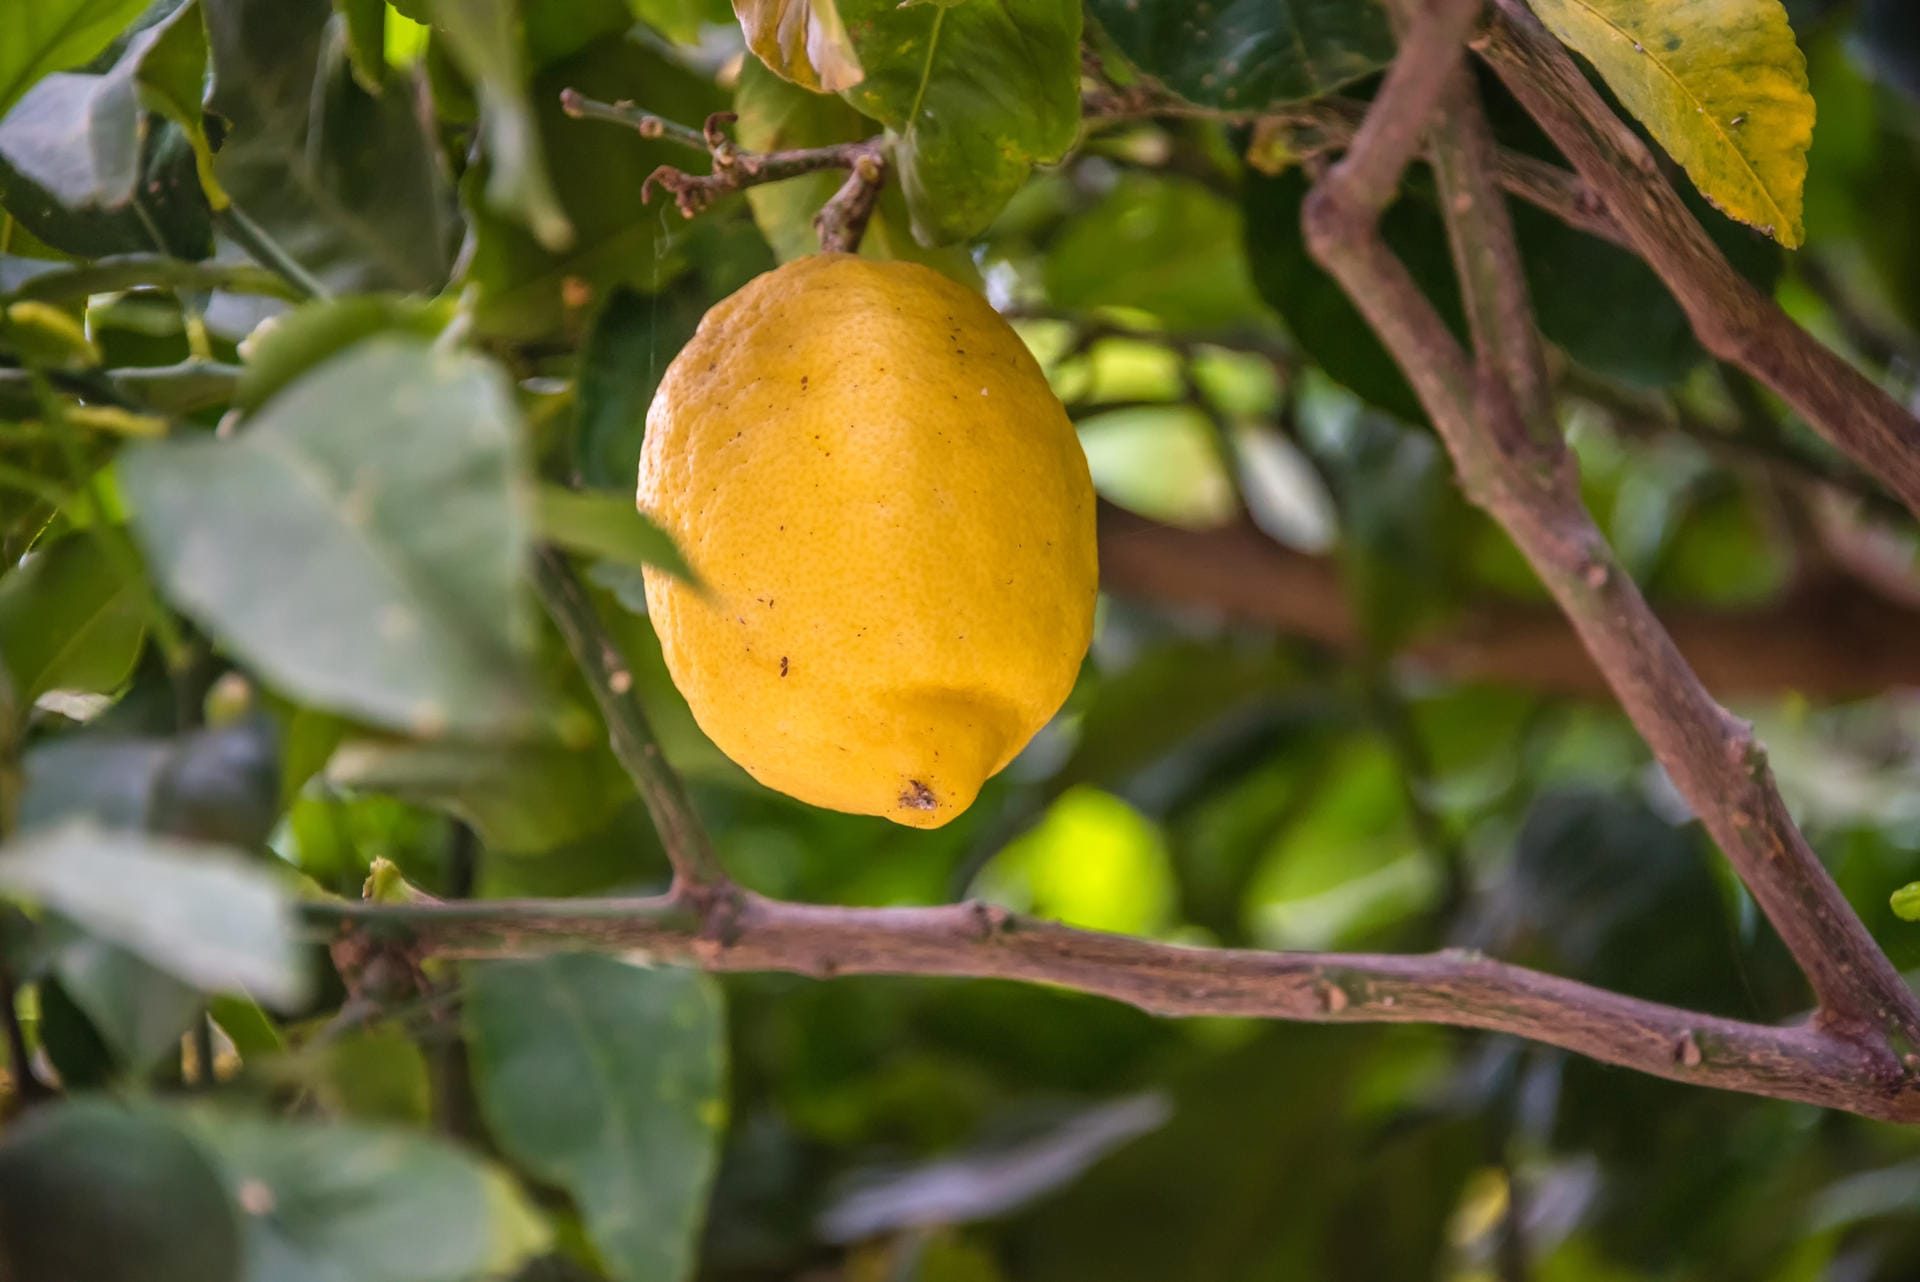 Zitrone am Zitronenbaum